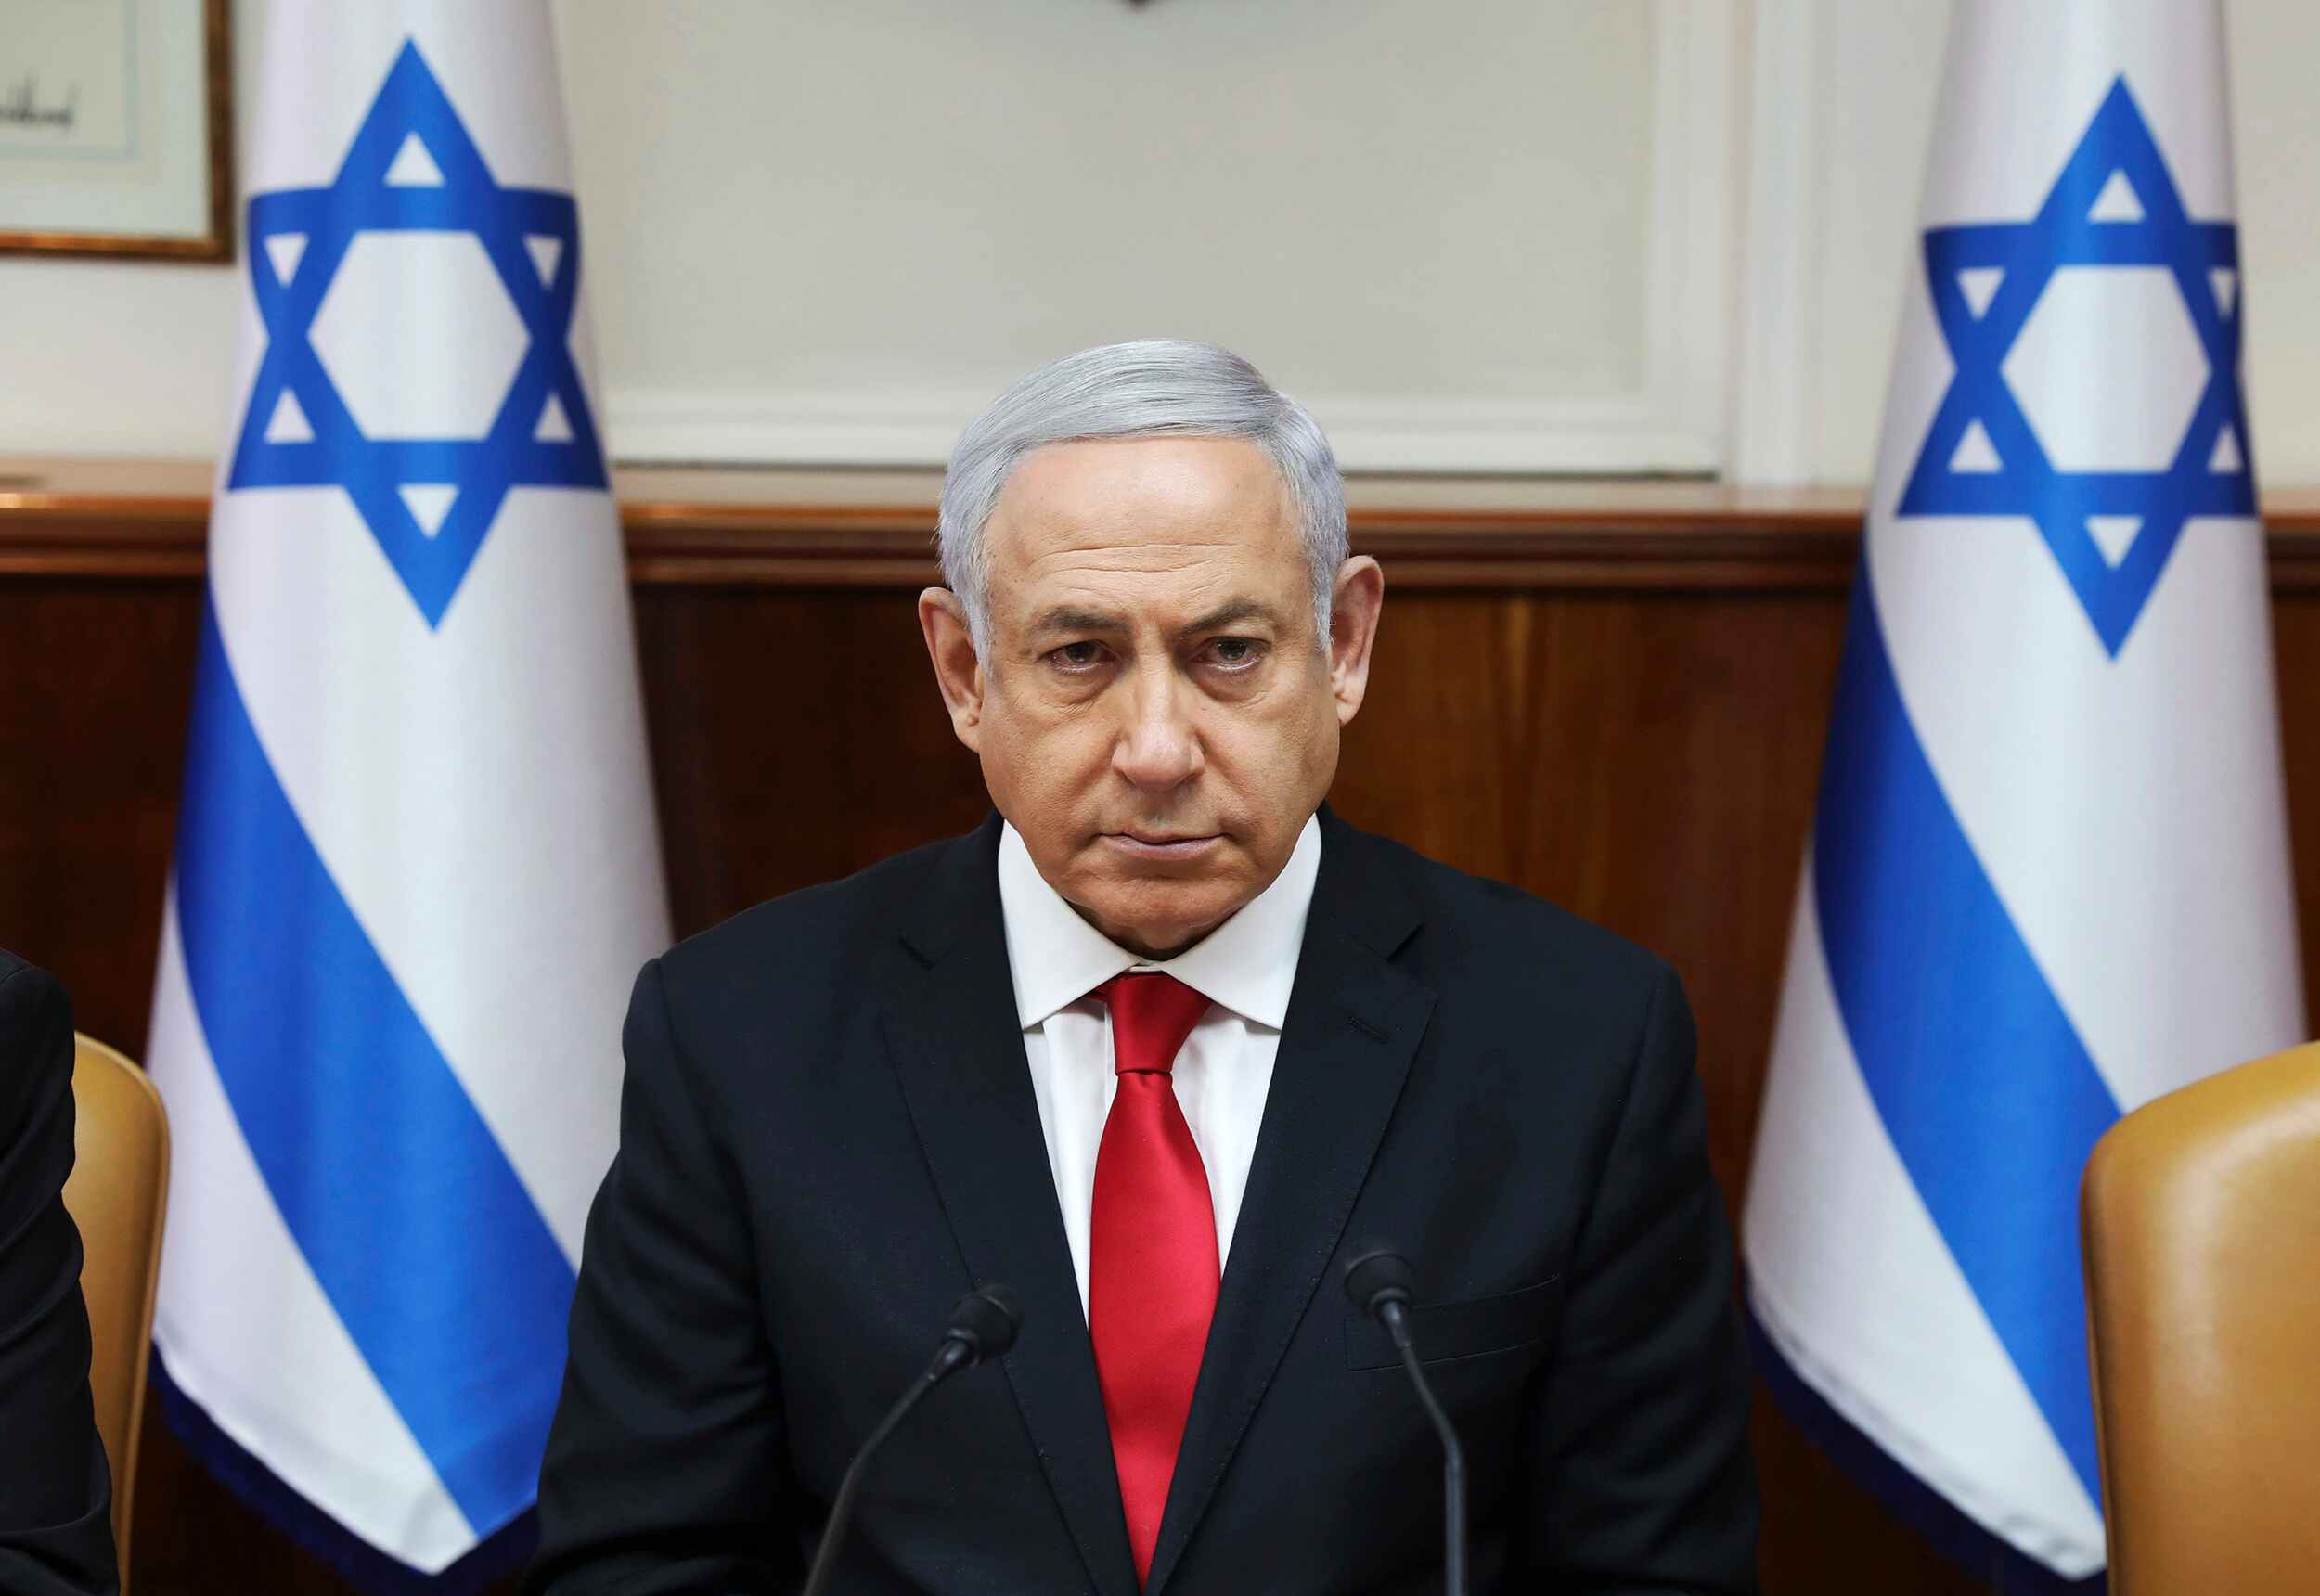 El gran regreso de Netanyahu, designado oficialmente para formar gobierno en Israel